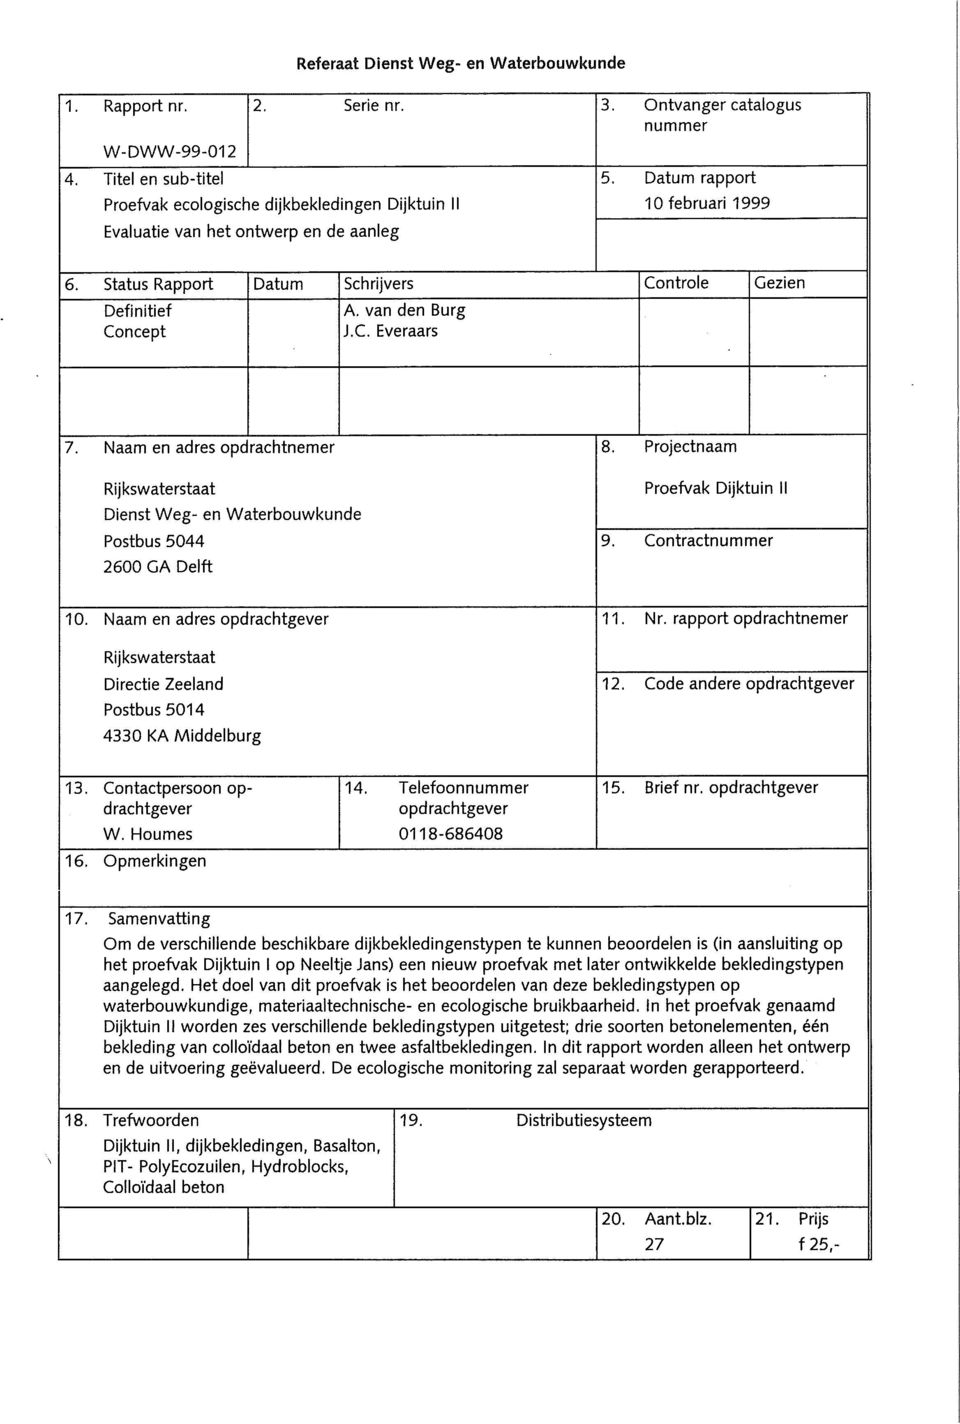 Status Rapport Datum Schrijvers Controle Gezien Definitief Concept A. van den Burg J.C. Everaars 7.